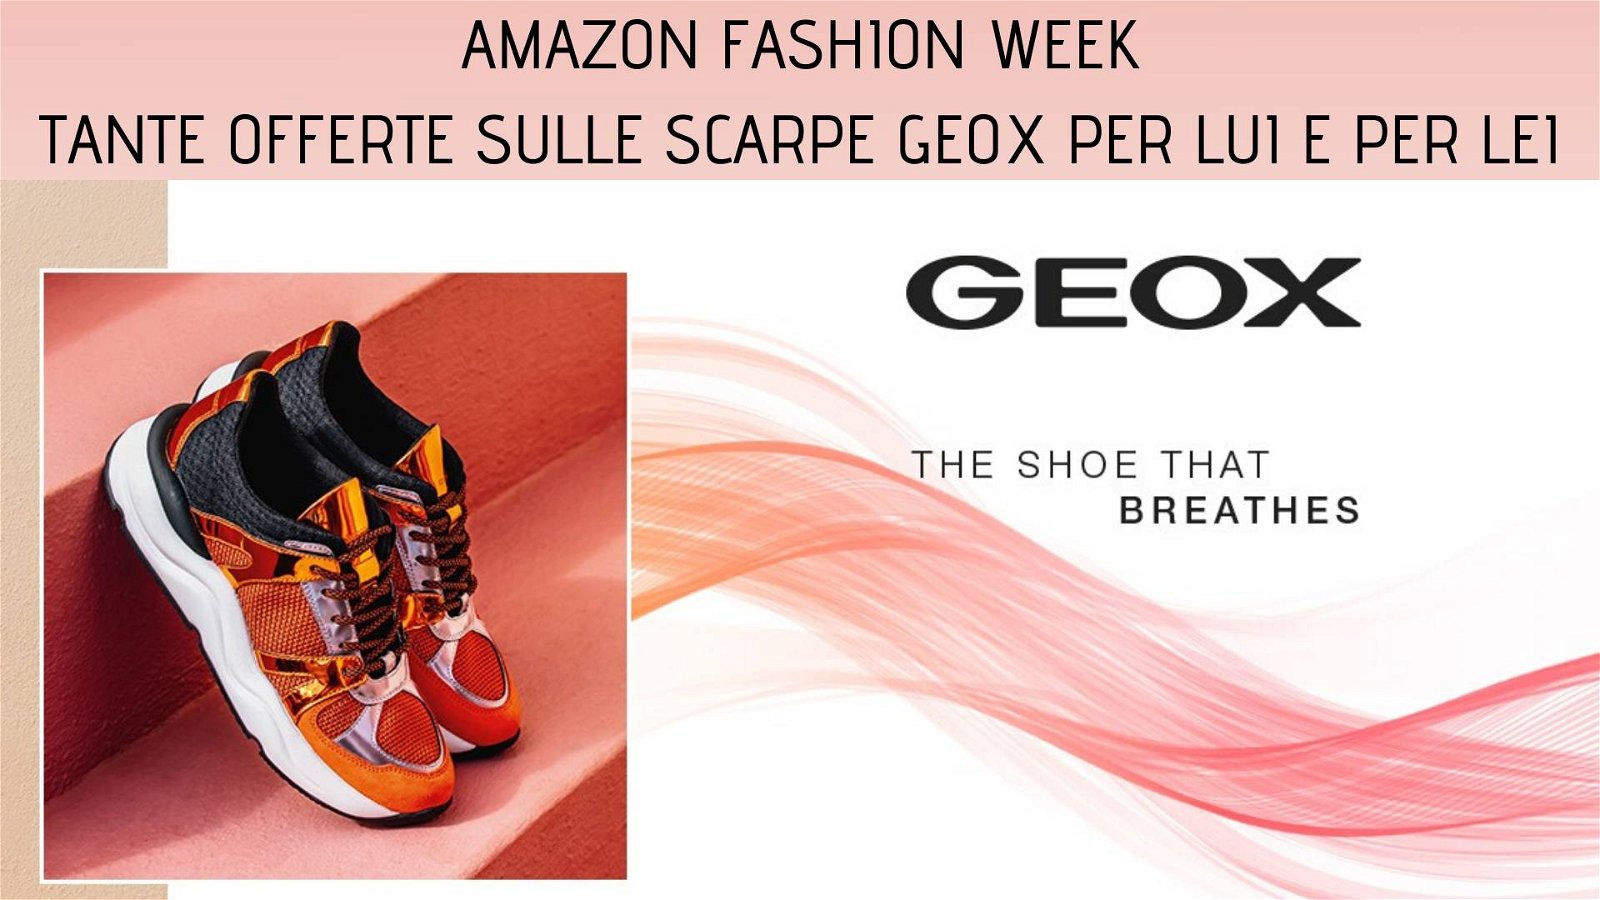 Immagine di Fino al 60% di sconto sulle scarpe Geox per la Amazon Fashion Week